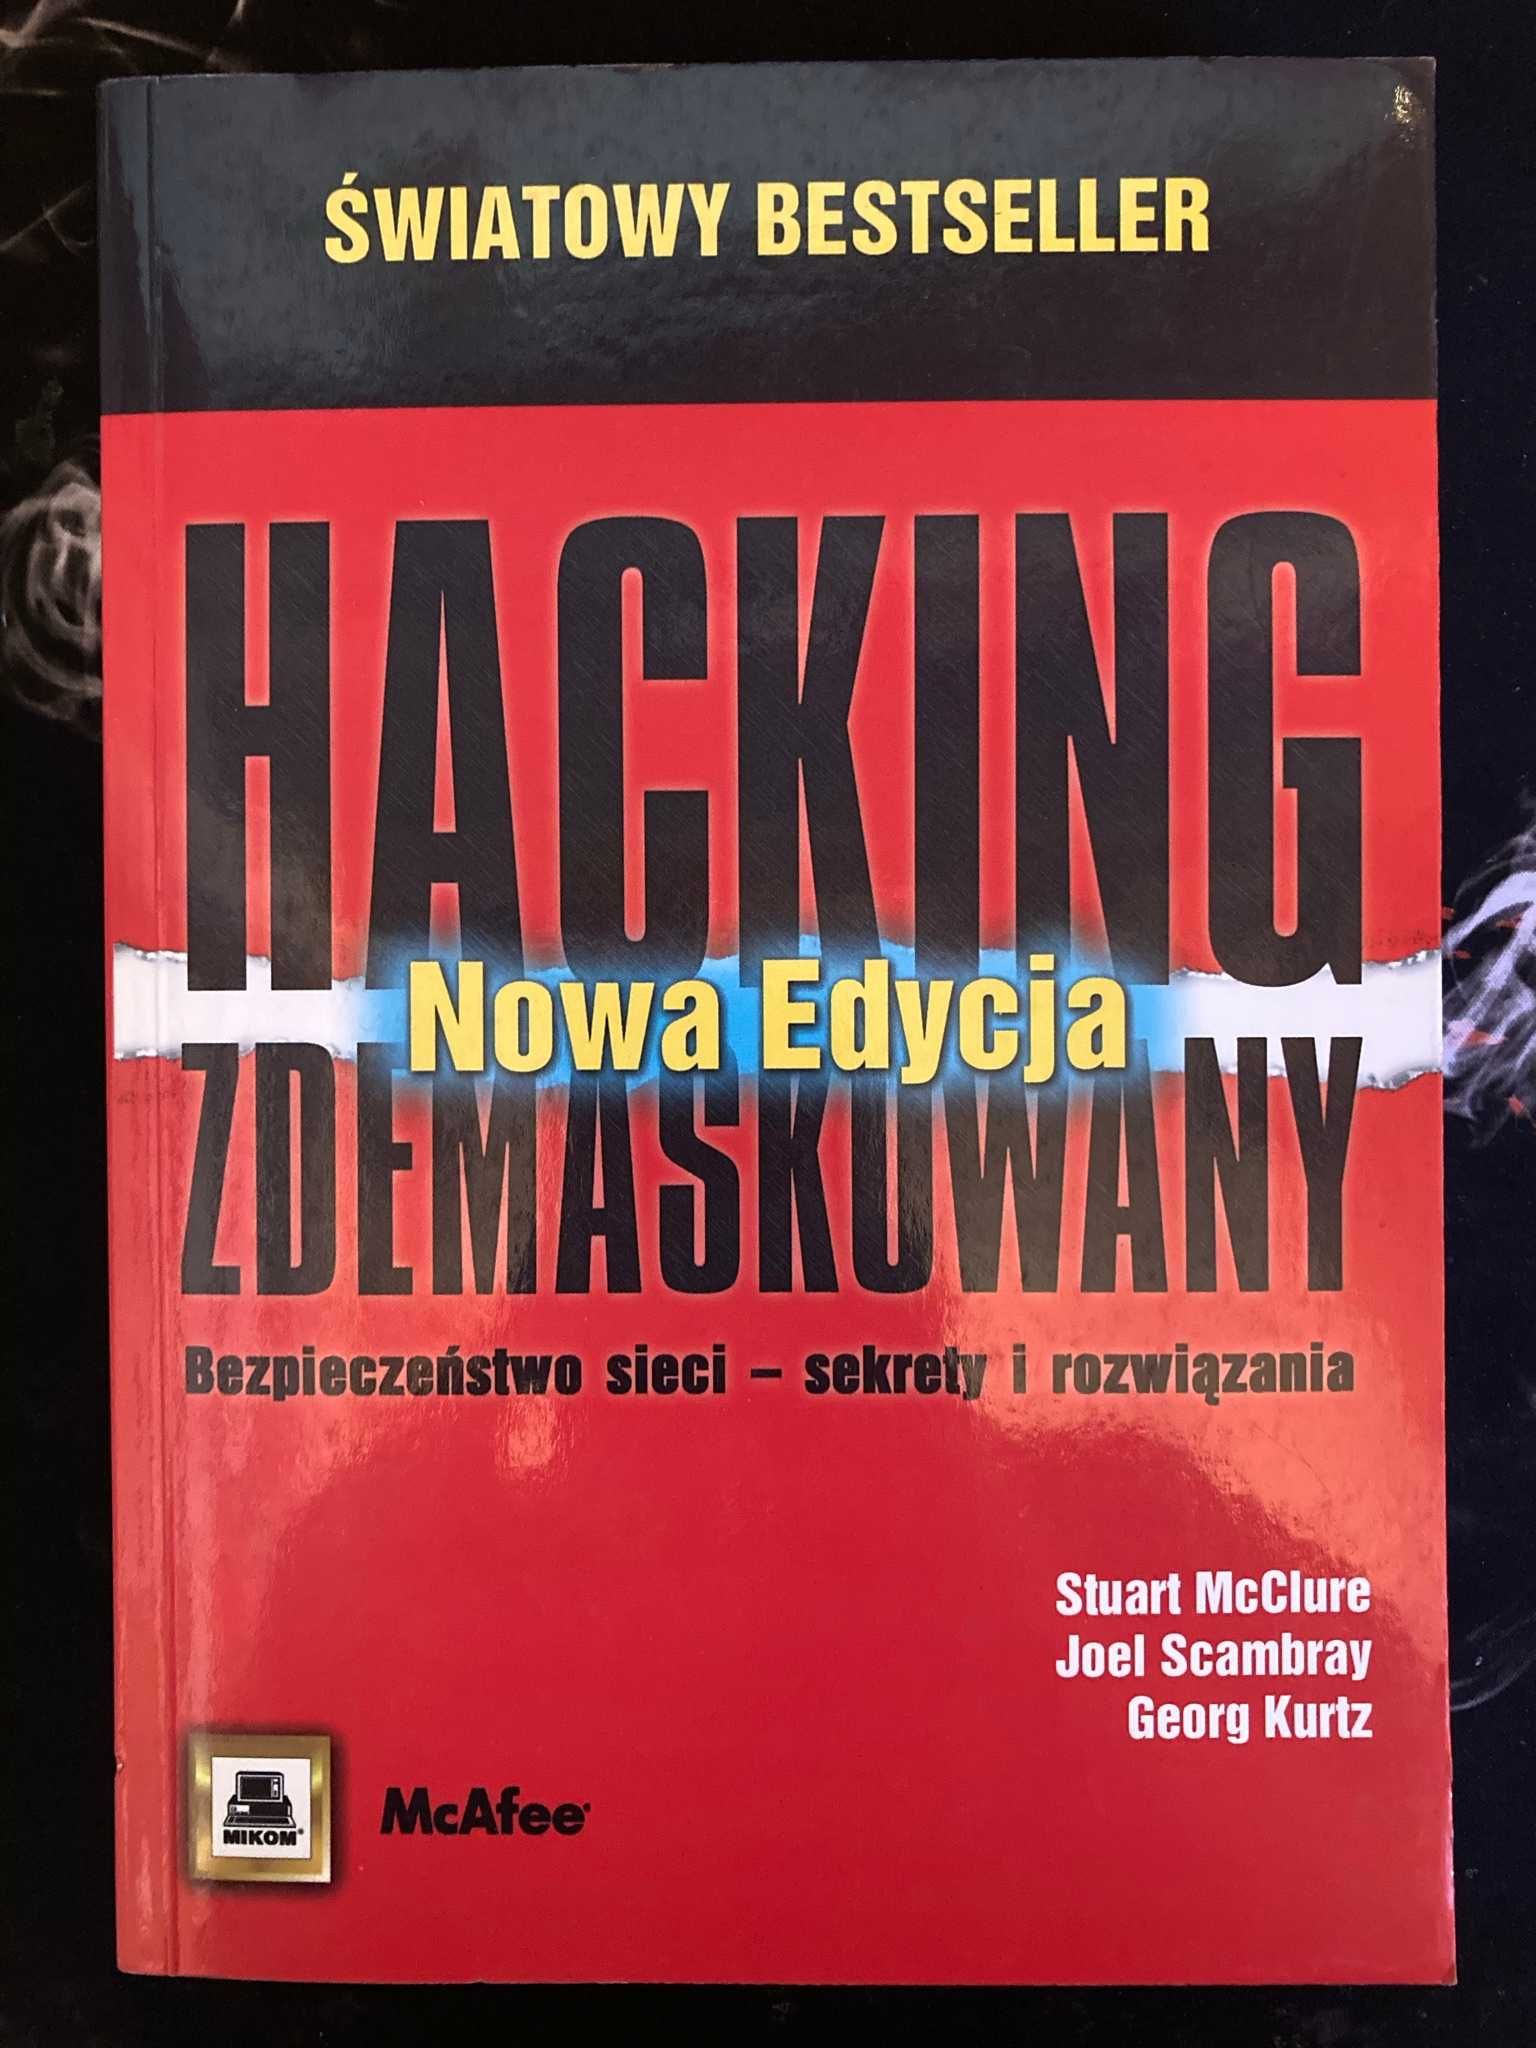 "Hacking zdemaskowany. Bezpieczeństwo sieci - sekrety i rozwiązania"